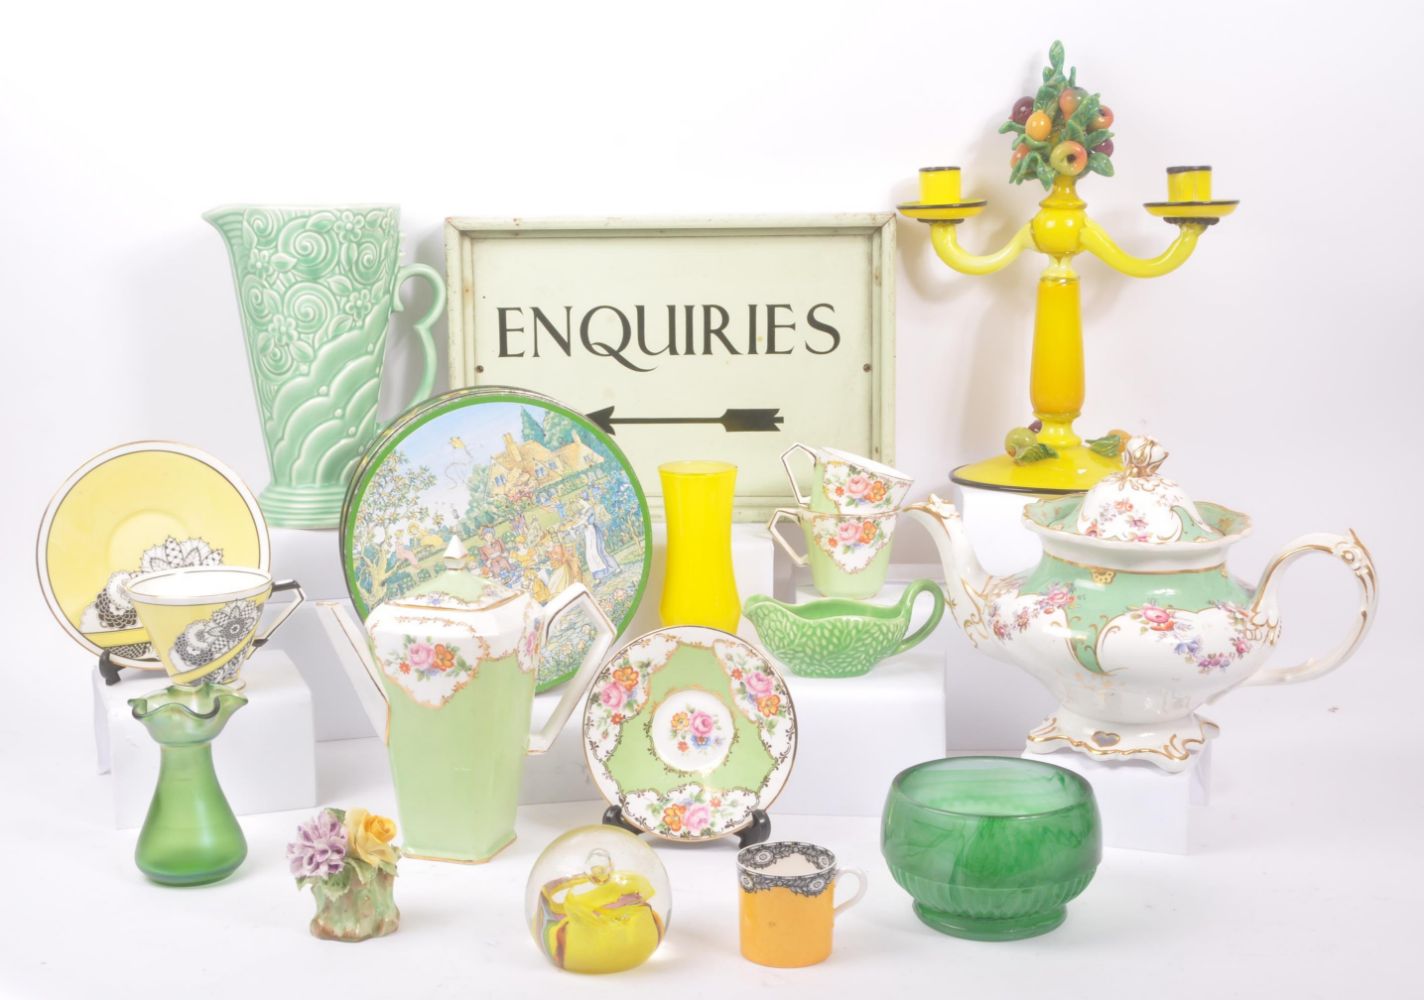 Online Antiques & Collectables - Ceramics, Collectables, Music, Memorabilia & Ephemera - Auctioneum Ltd - East Bristol & Bath